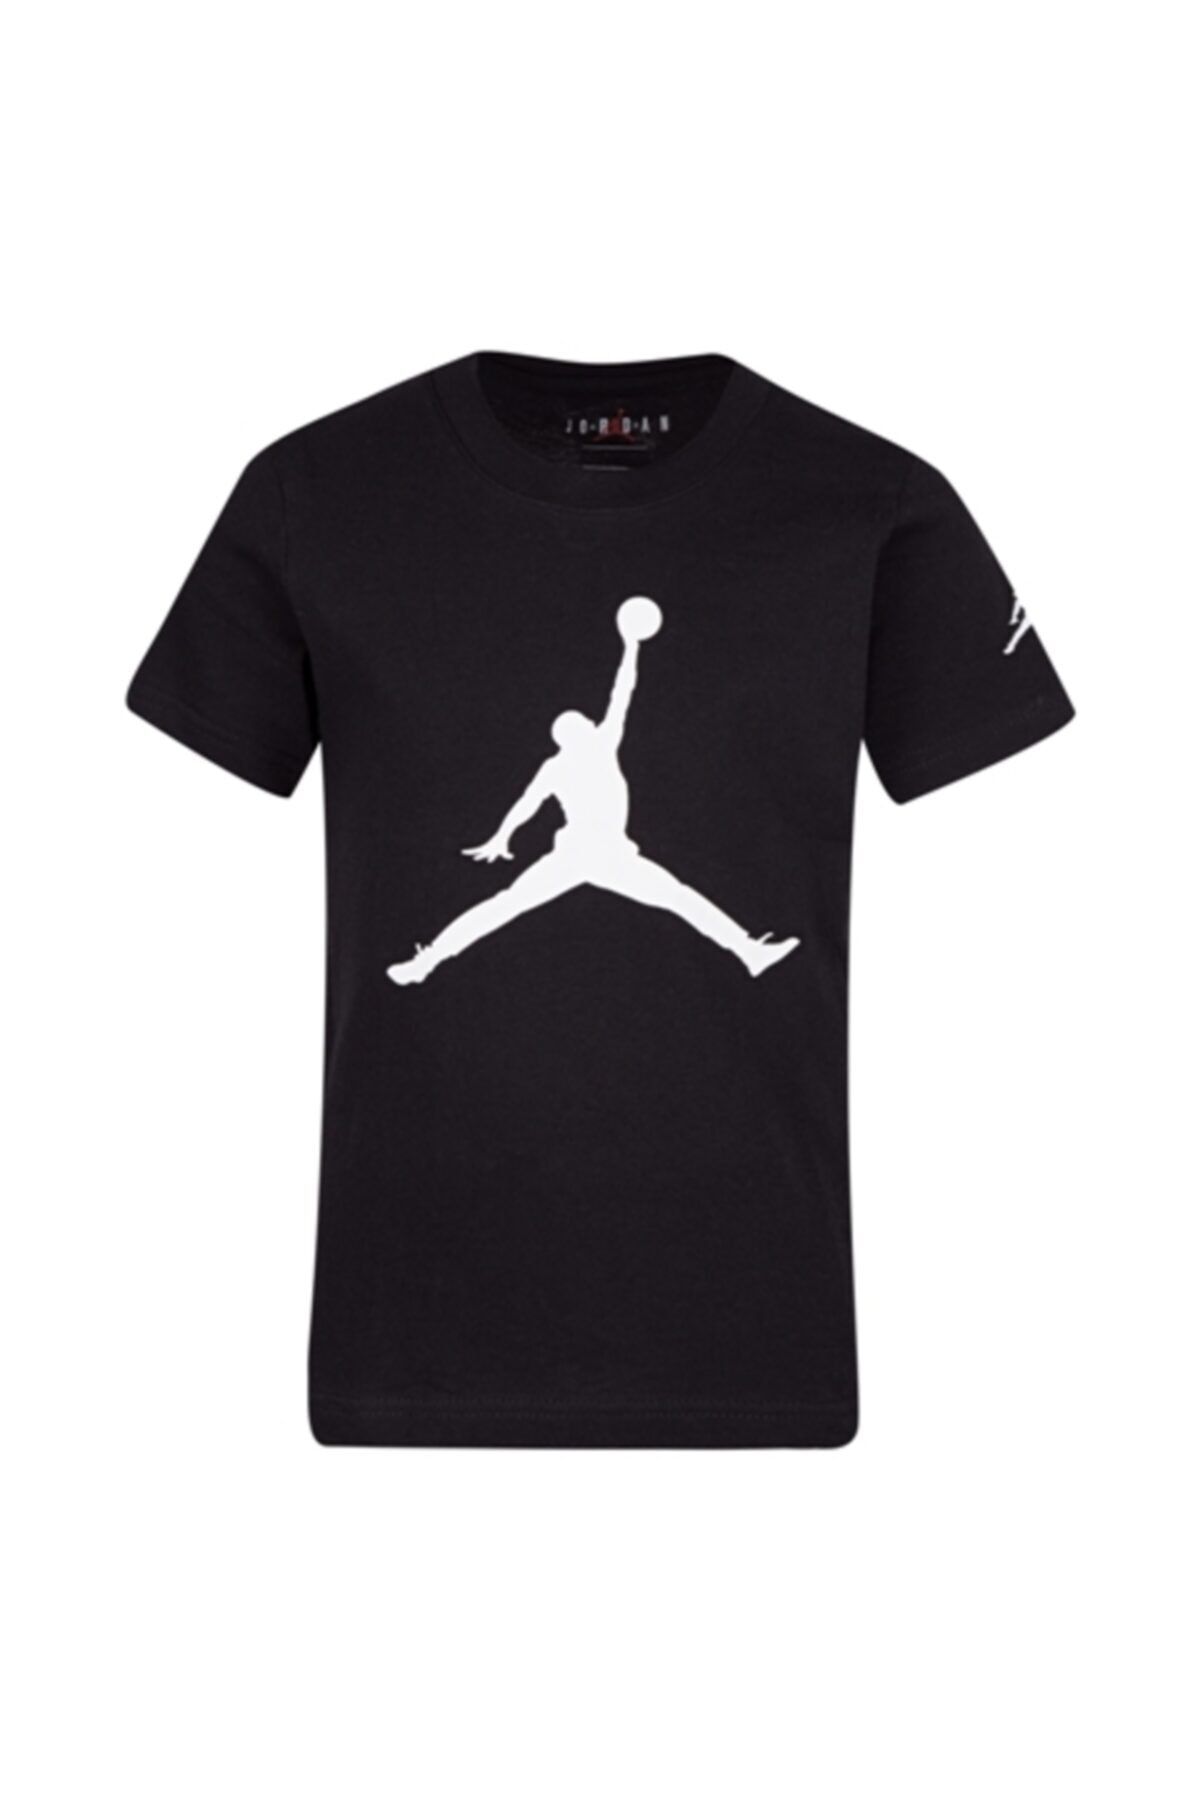 Nike Nıke Jdb S/s Jordan Jumpman Tee Erkek Çocuk Tişört 852423-023